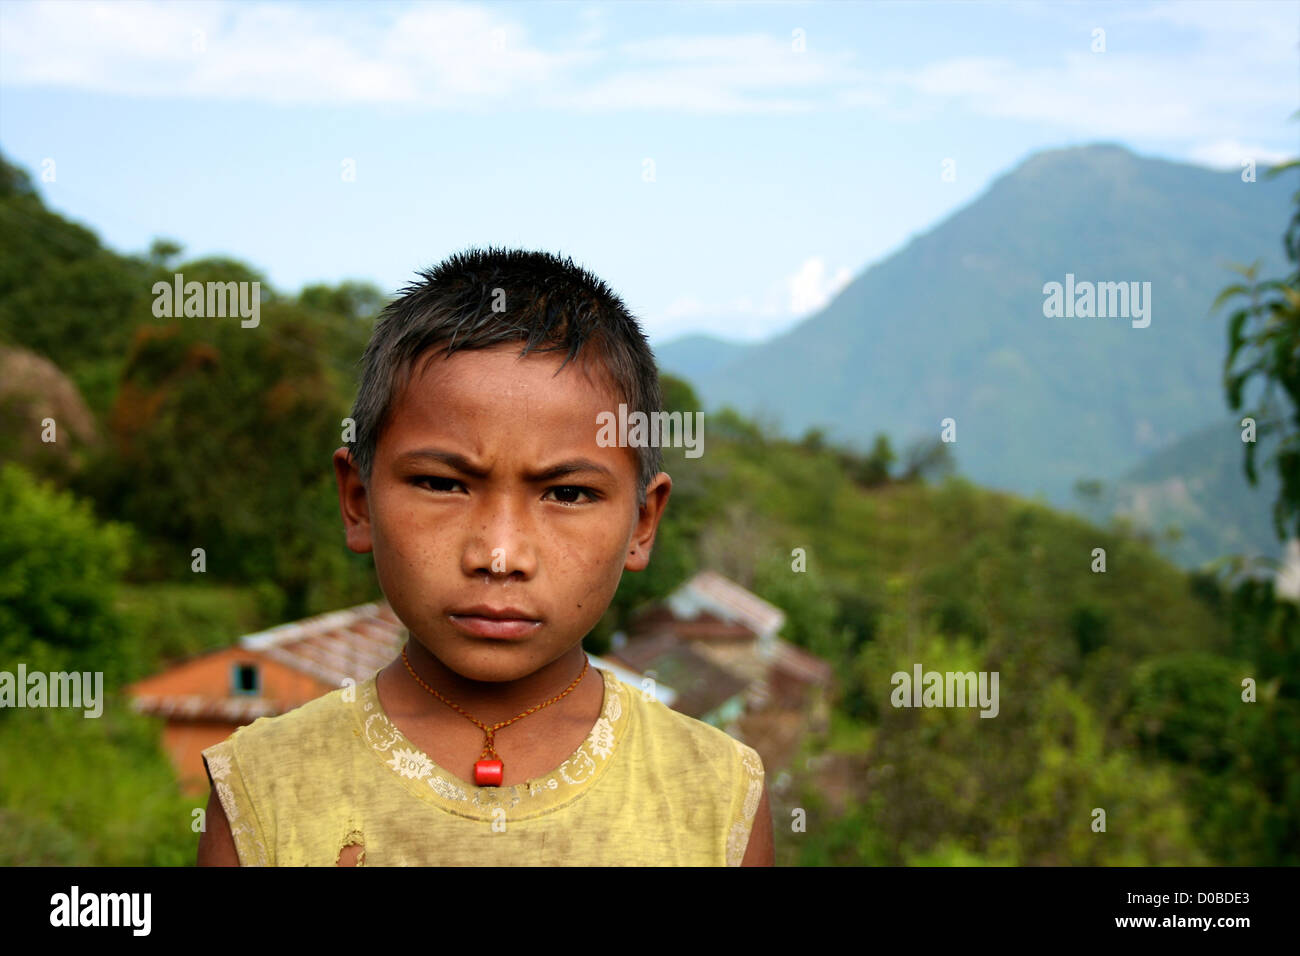 Ragazzo nepalese in remoto villaggio nella regione helambu, Nepal Foto Stock